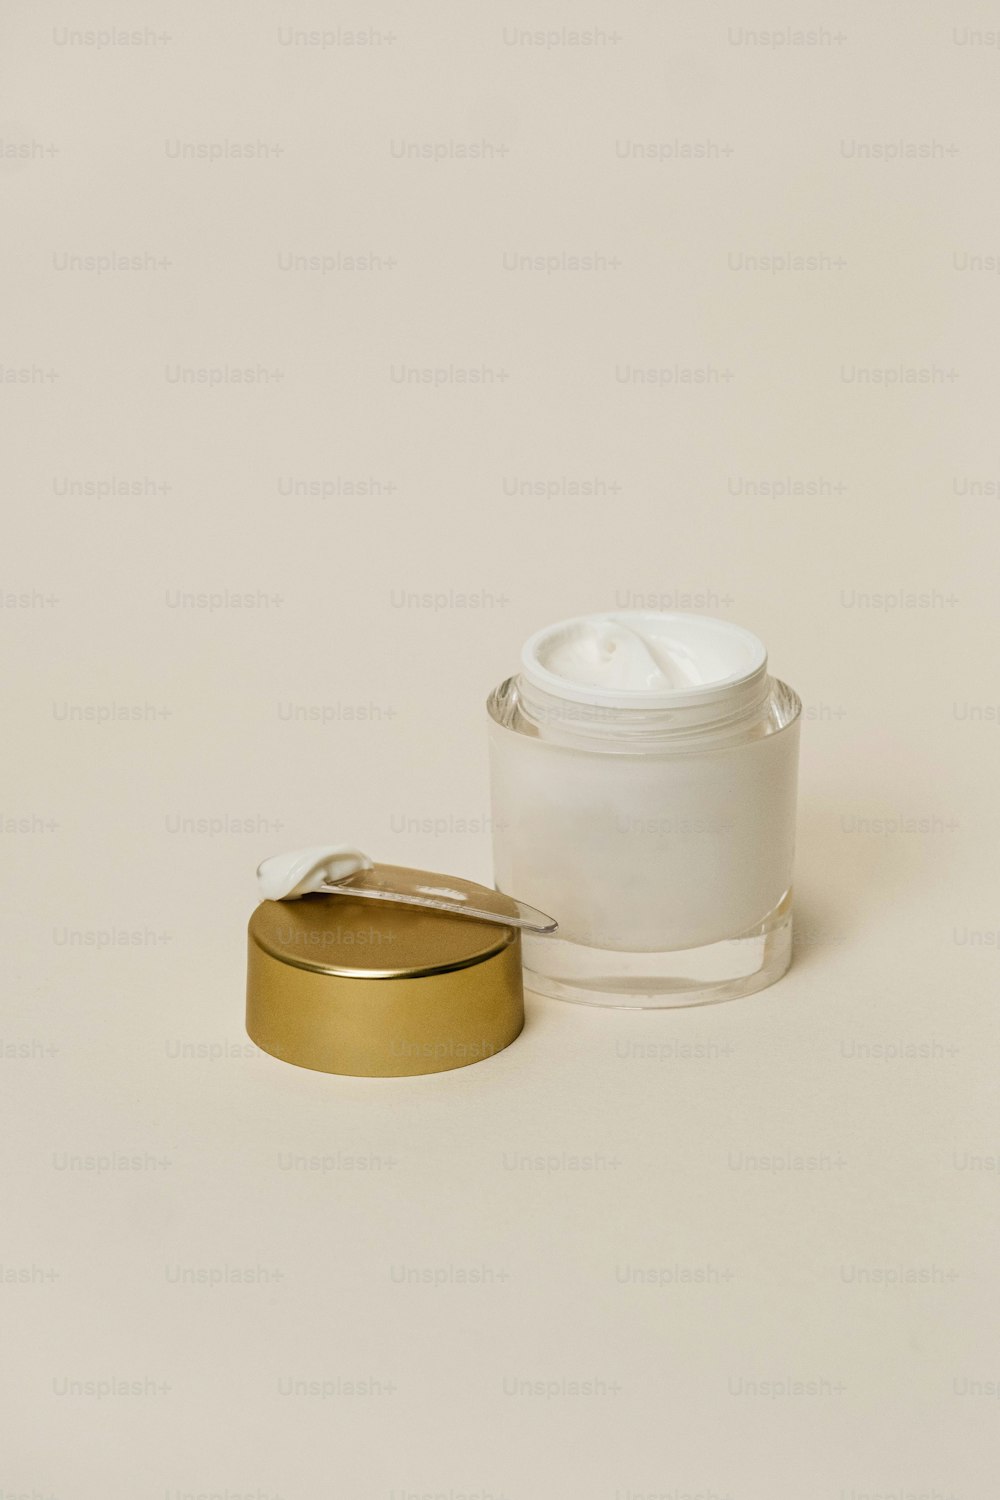 ein weißer Behälter mit goldenem Deckel neben einem weißen Behälter